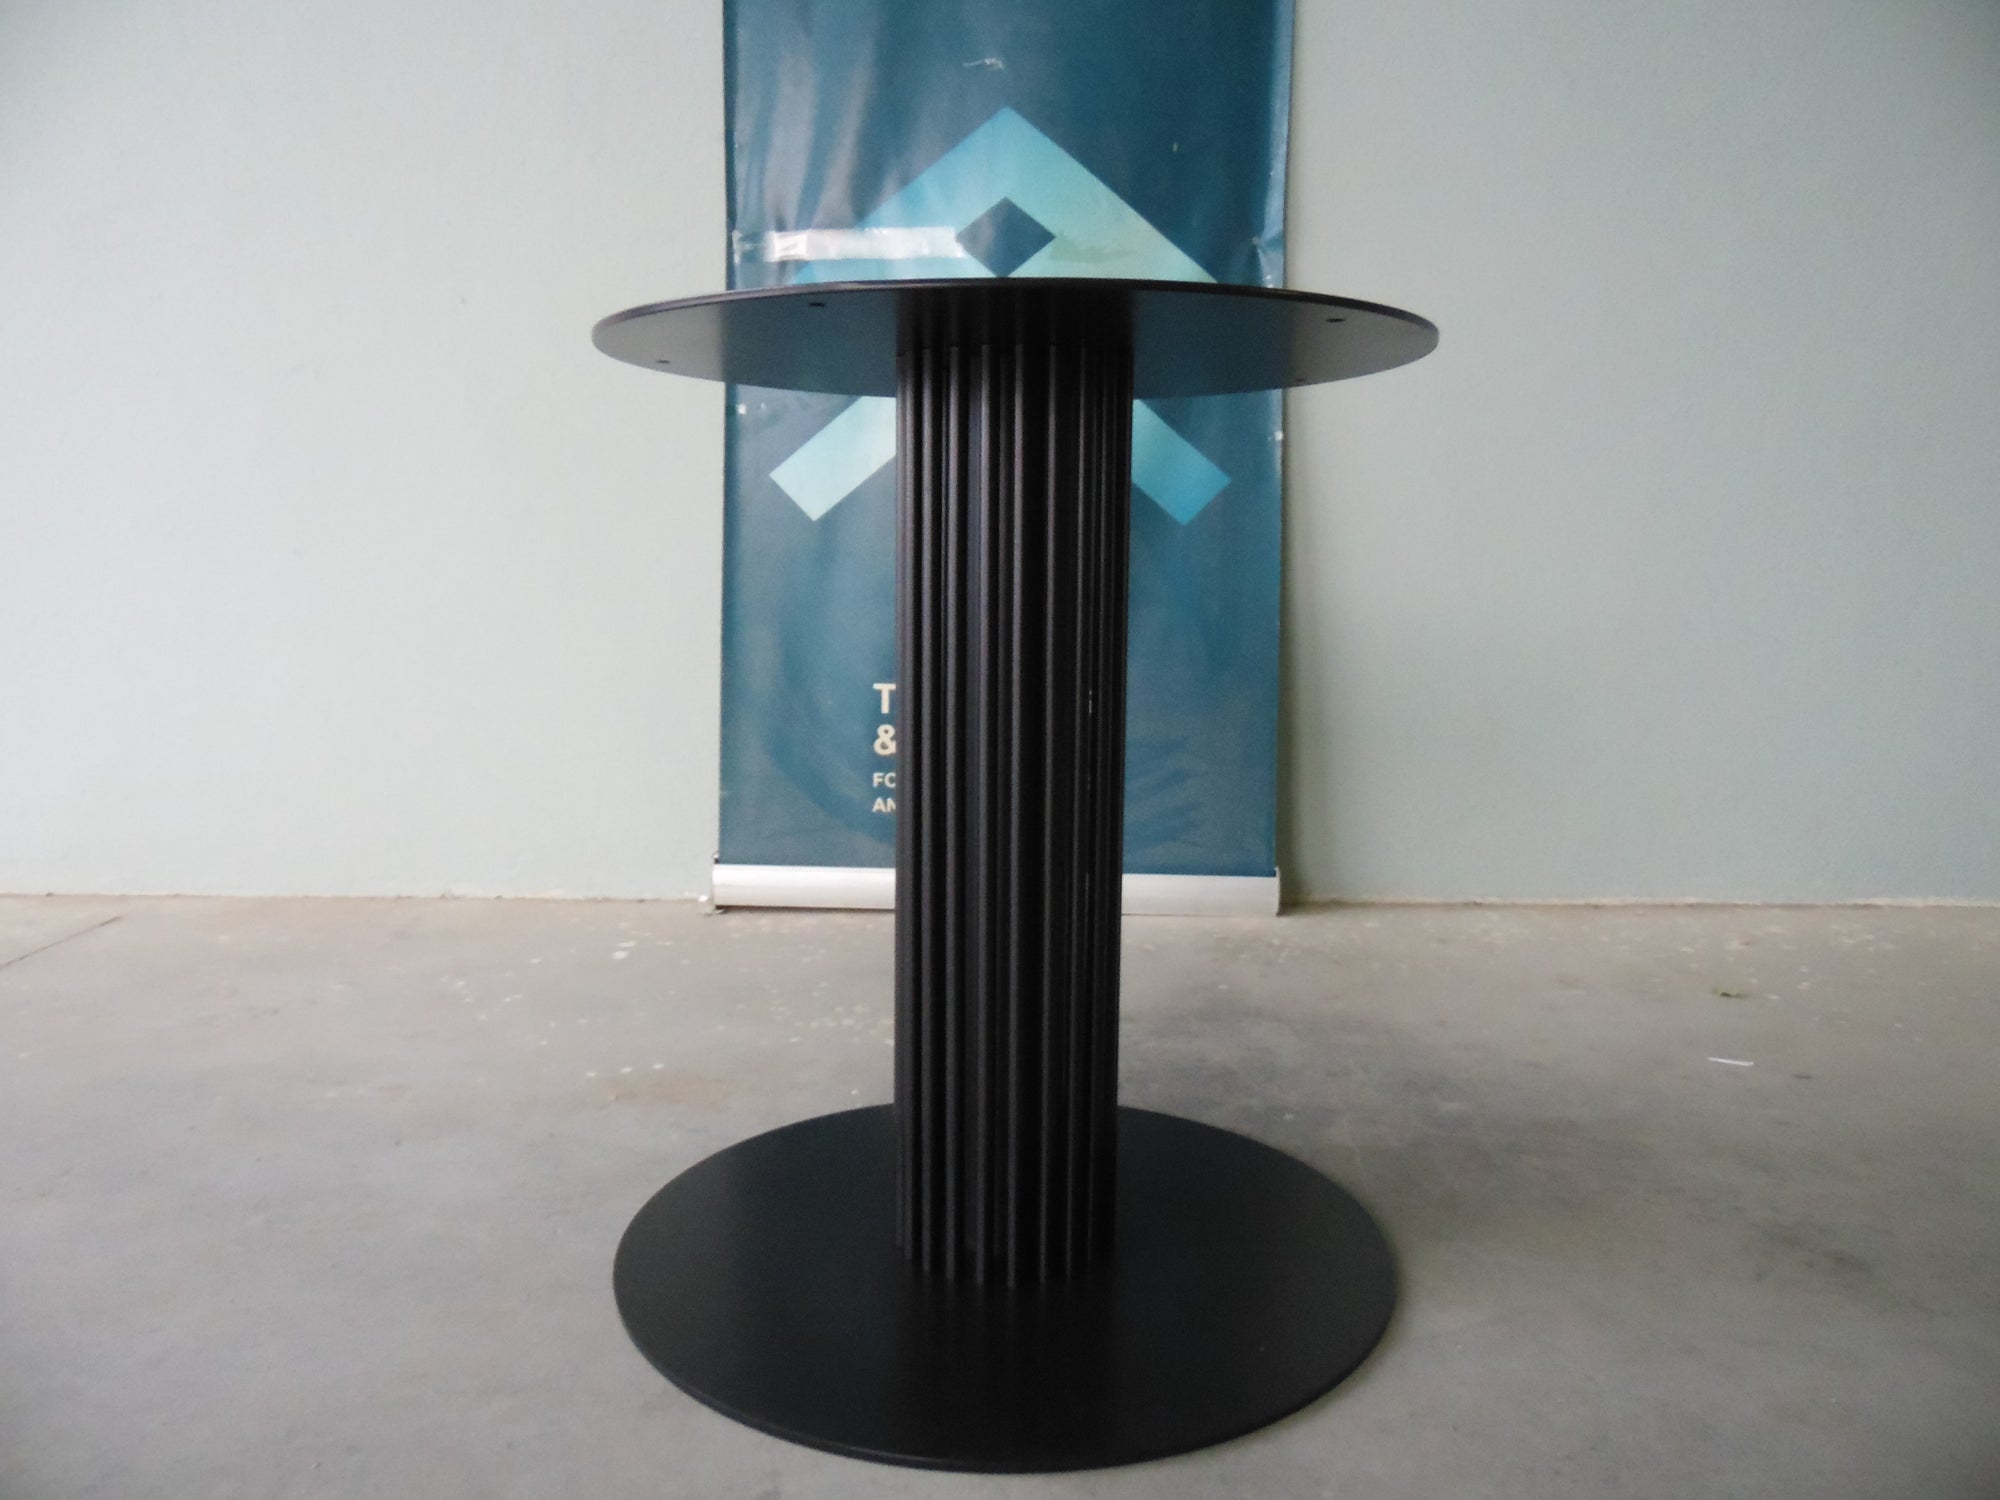 Metal Table Pedestal Base , 28” Height x 24” Base Round | DIZDAR